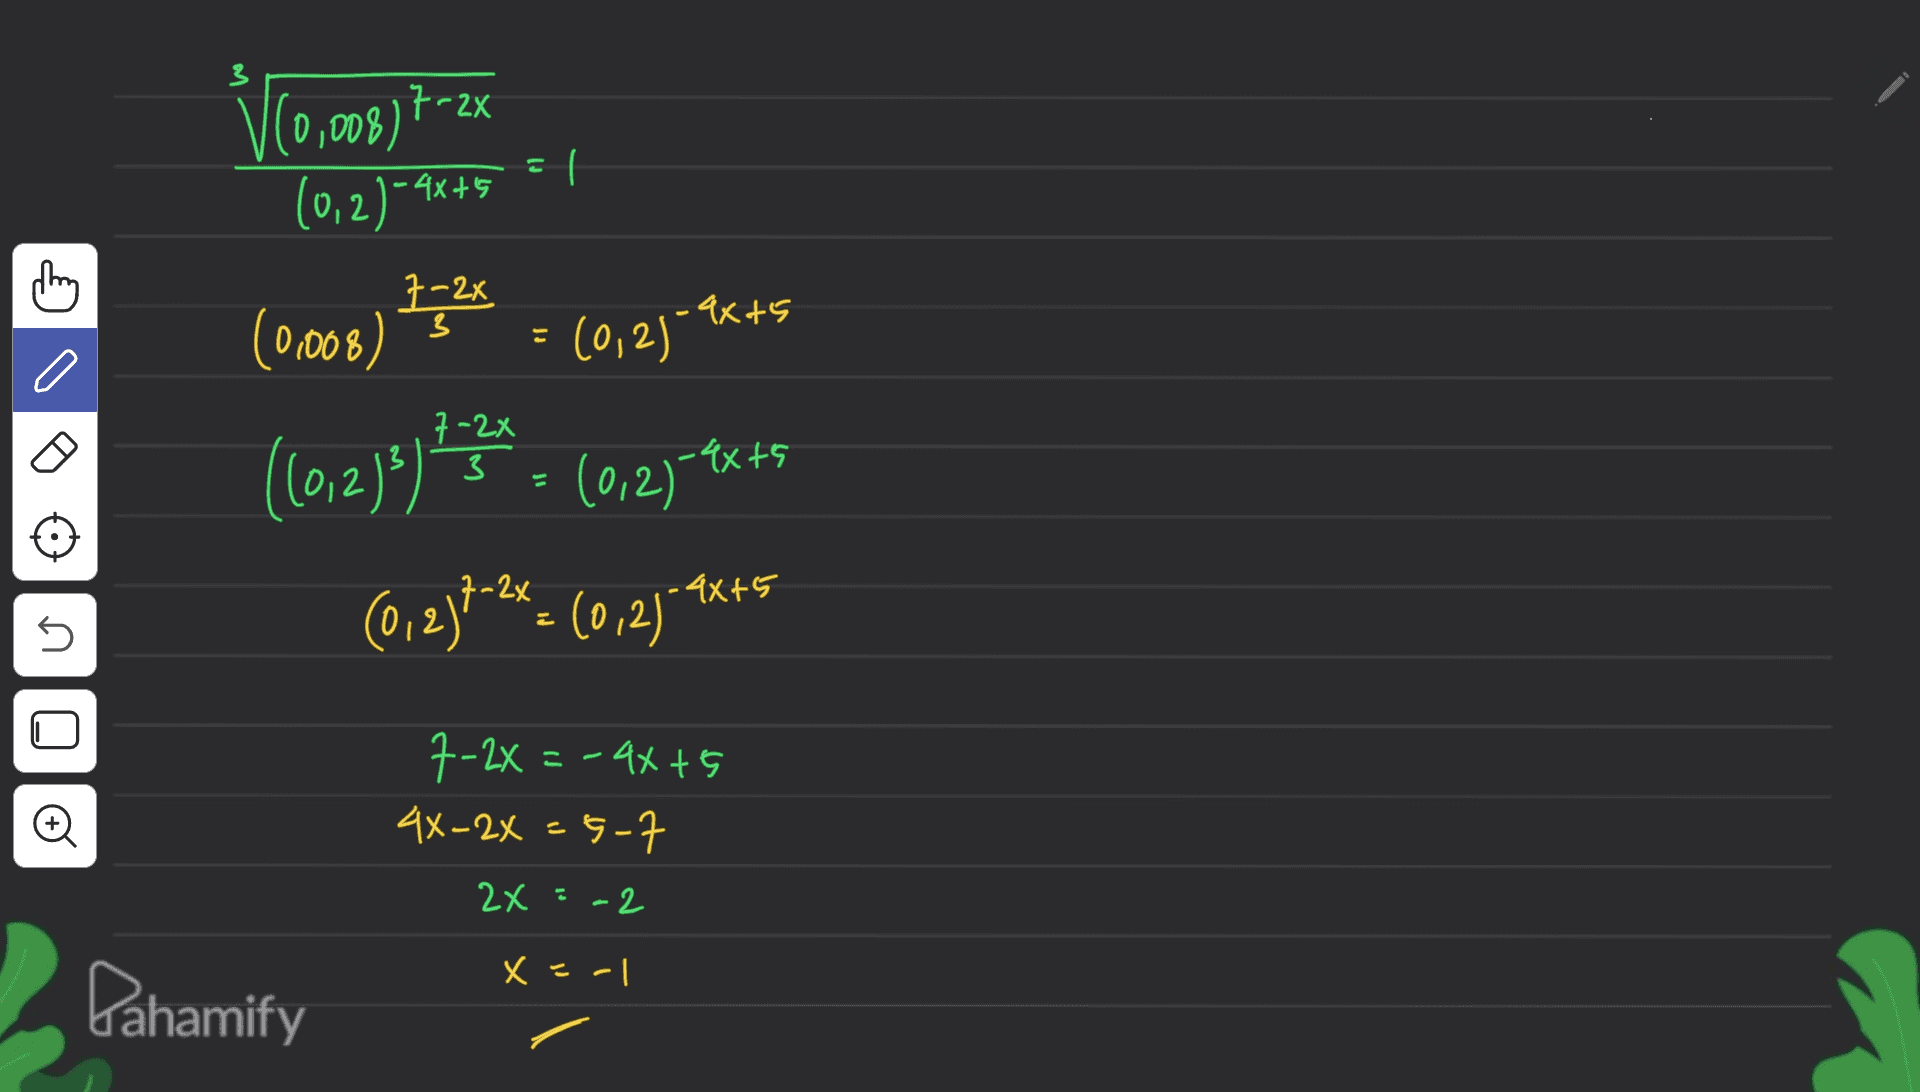 V(0,003) +-26 ll (0,2)-2 -4x+5 thing 7-22 -ax+5 ( (0.008) 3 (0,2)-9 o (6,2)) An (0,27-**45 (0, 2)}-2%= (0,2) .4x+5 **** U U 7-2x = - 4x + 5 4x-2x = 5-7 o 2x :-2 x = -1 Pahamify 